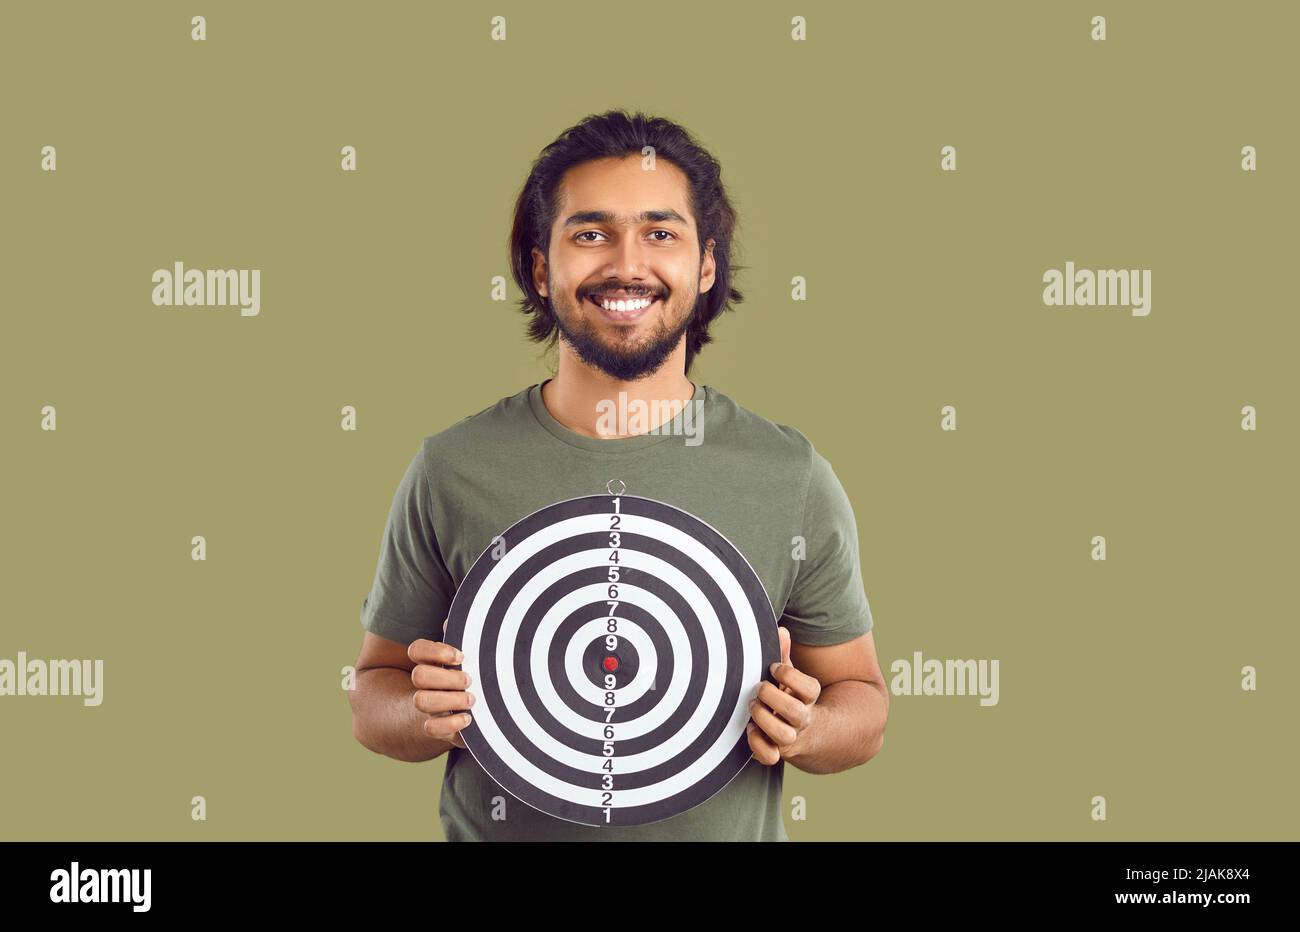 Glücklich lächelnder indischer Kerl hält Schießziel, um Konzept der Festlegung von Zielen zu zeigen Stockfoto